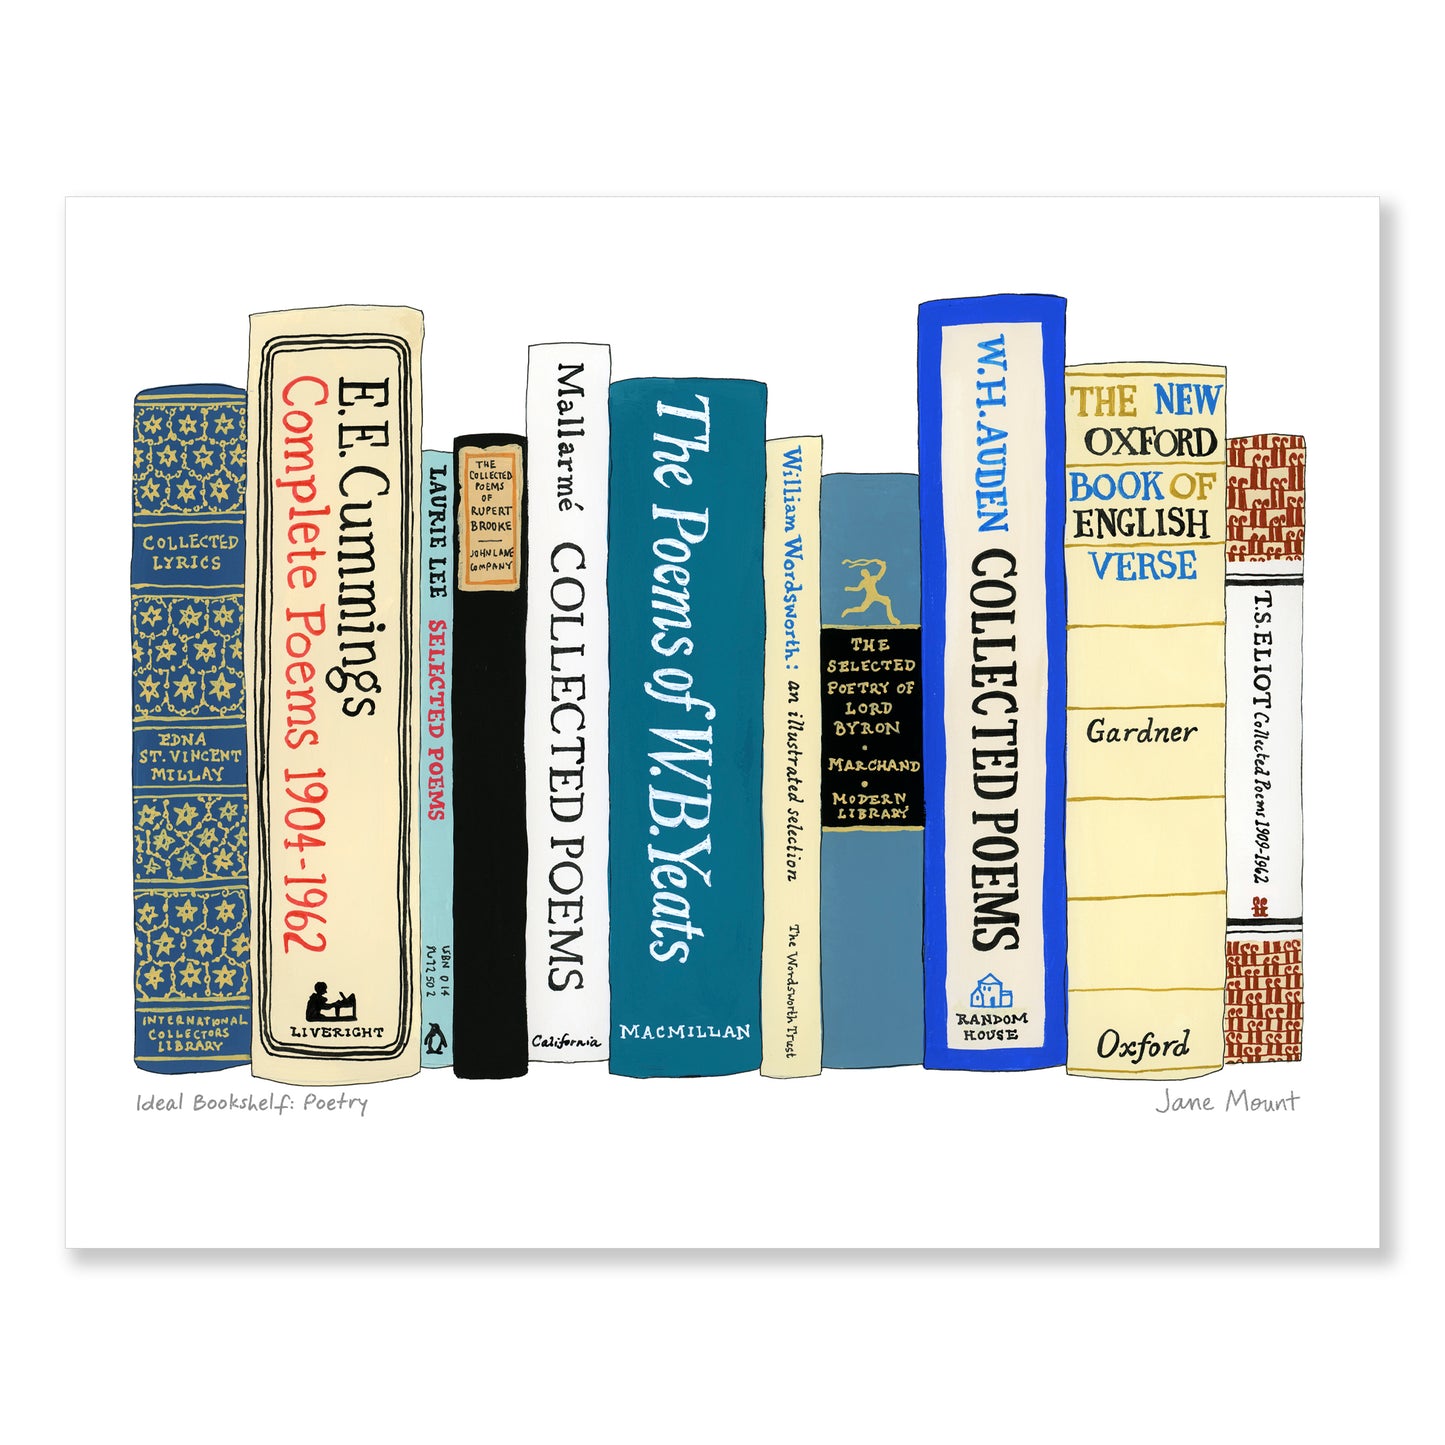 Ideal Bookshelf 668: Poetry